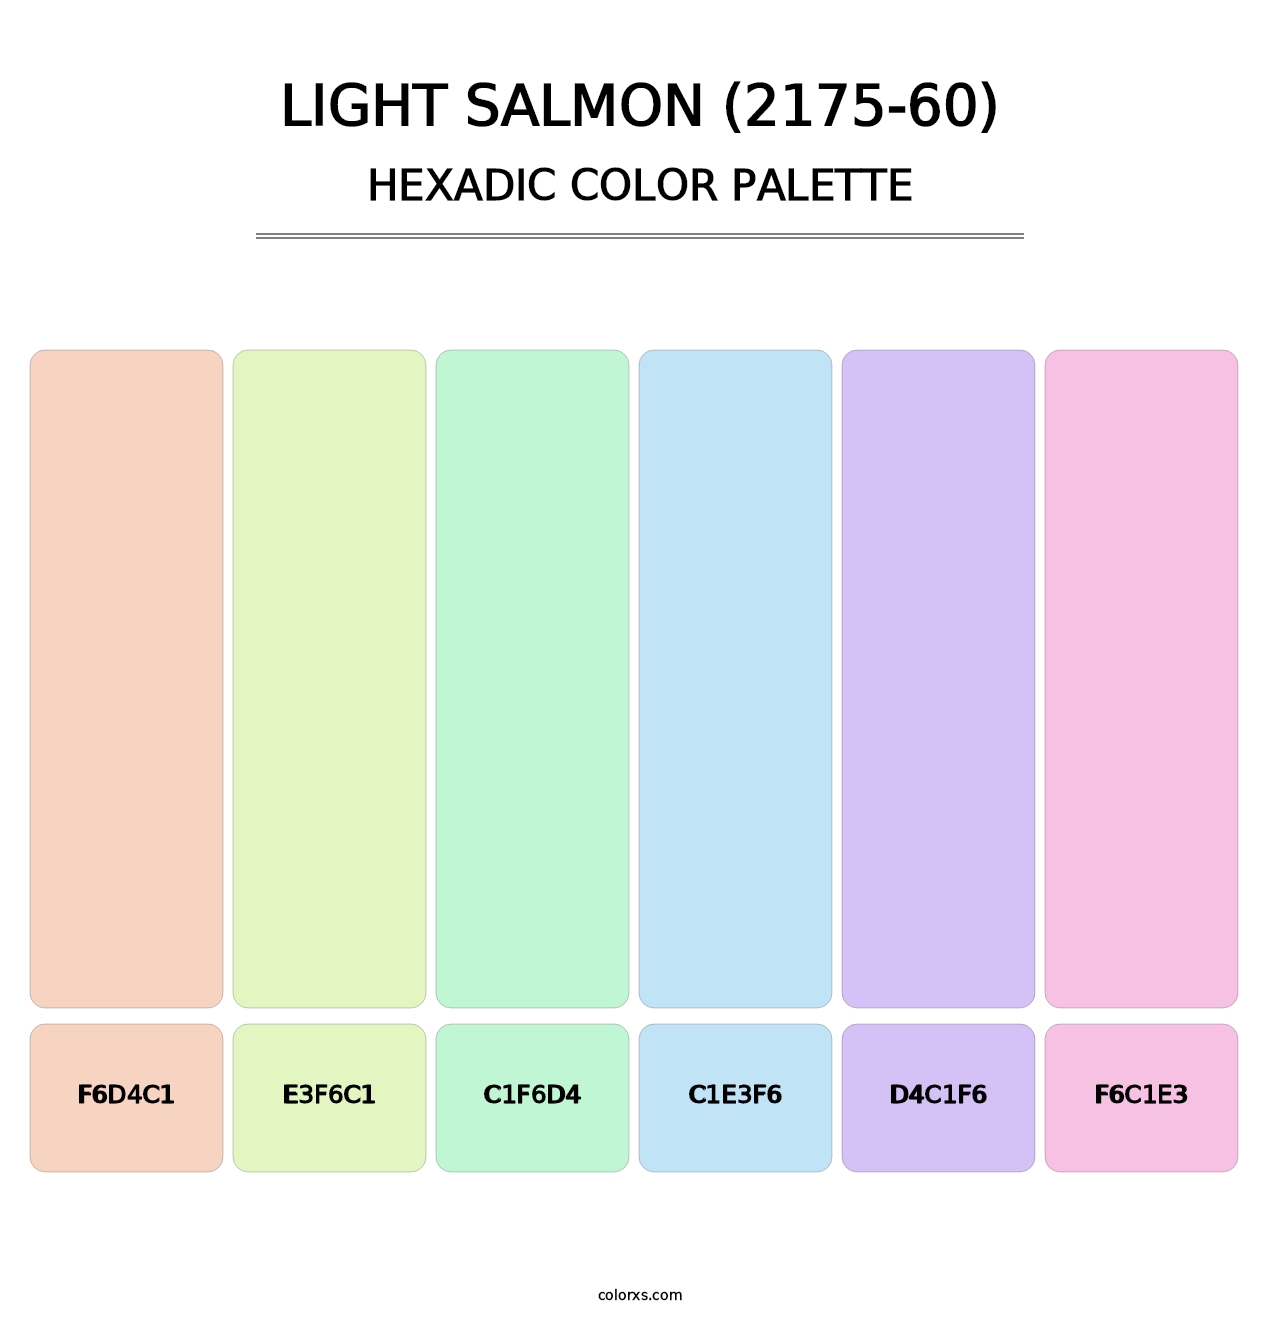 Light Salmon (2175-60) - Hexadic Color Palette